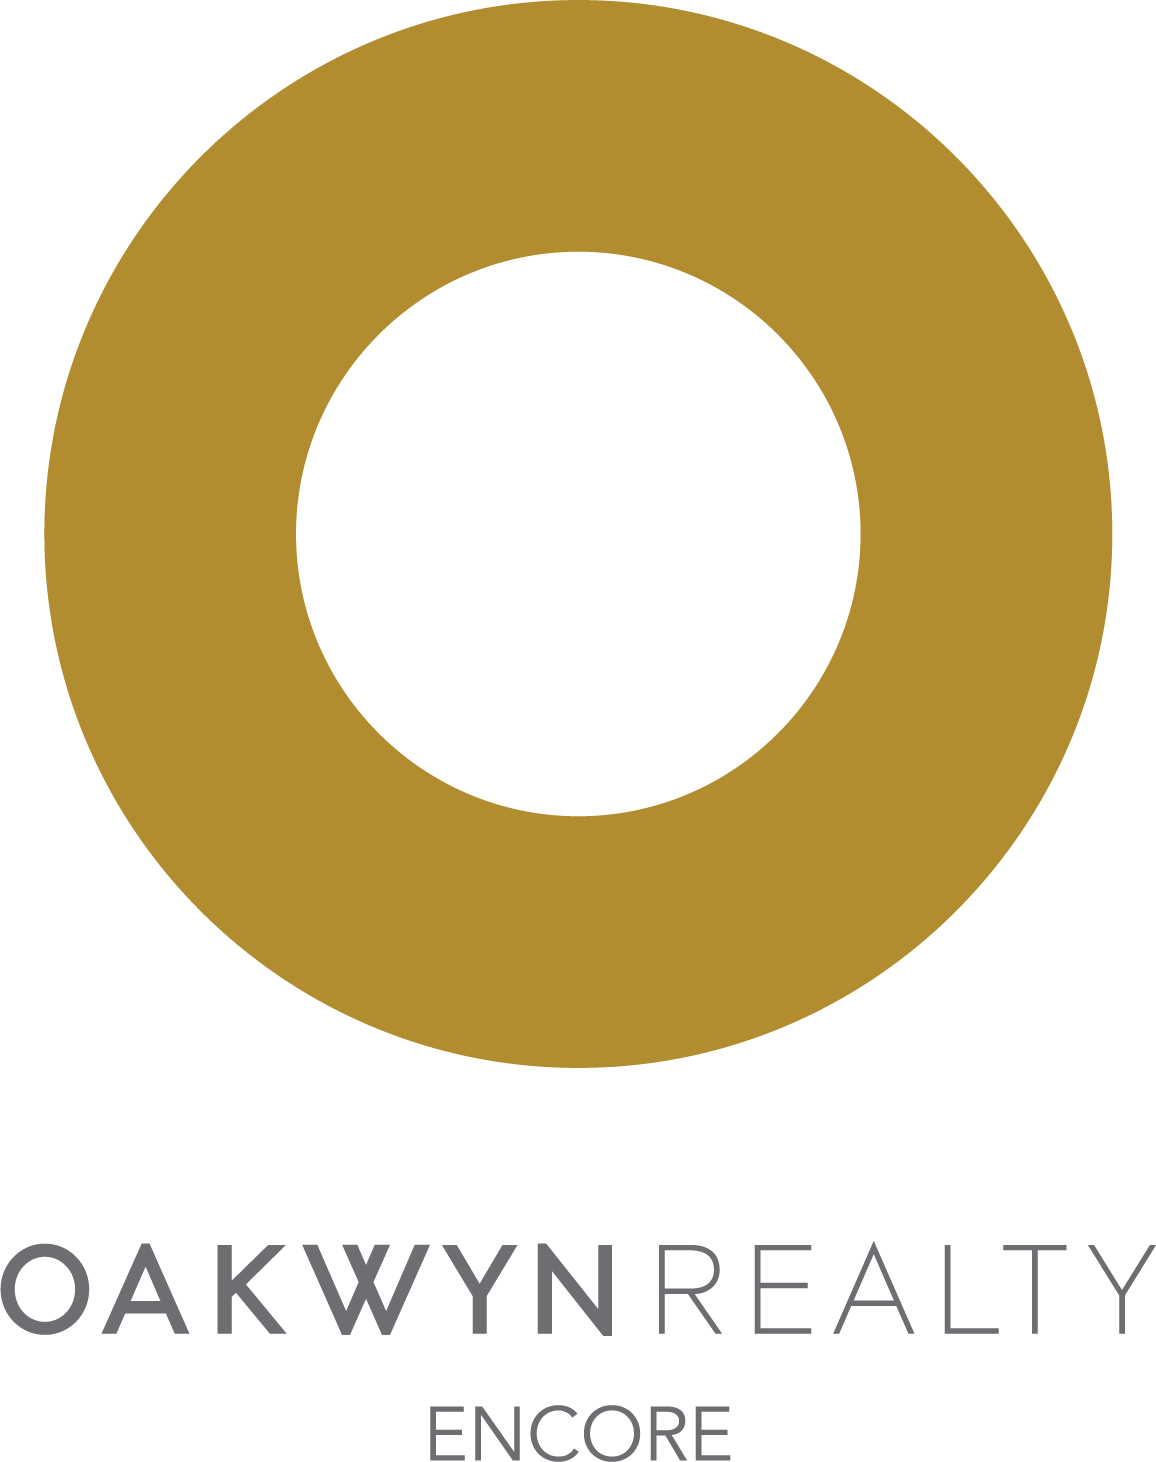 Oakwyn Realty Encore logo